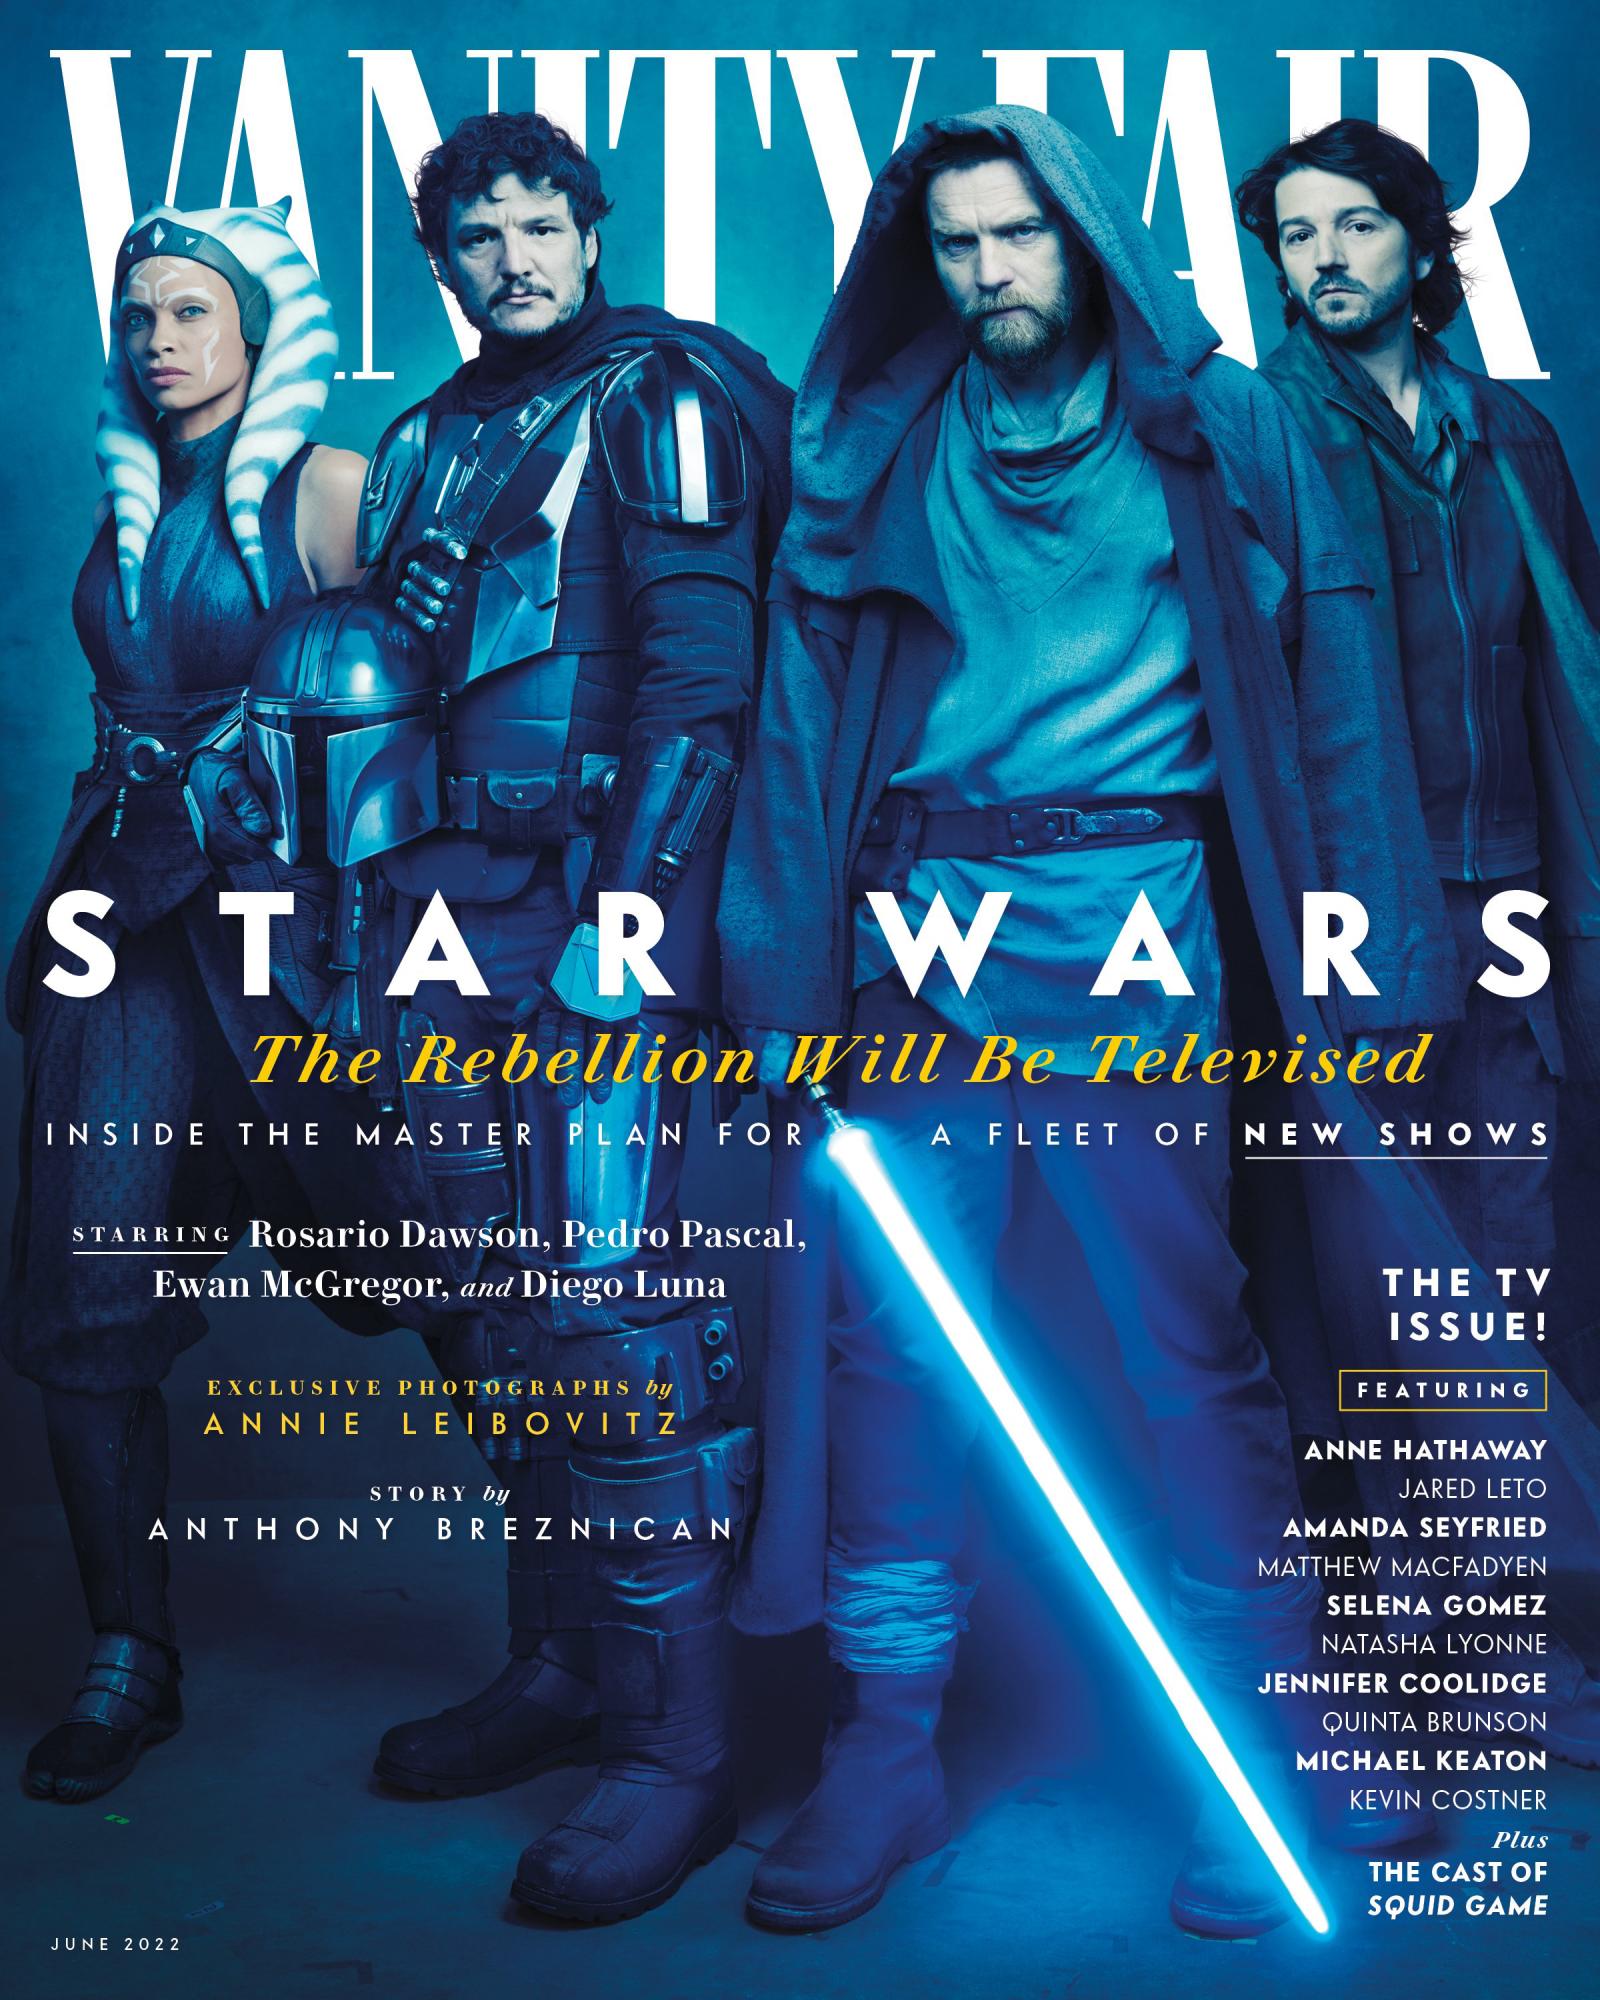 $!Protagoniza Diego Luna portada de Vanity Fair, junto a elenco de nueva serie de ‘Star Wars’